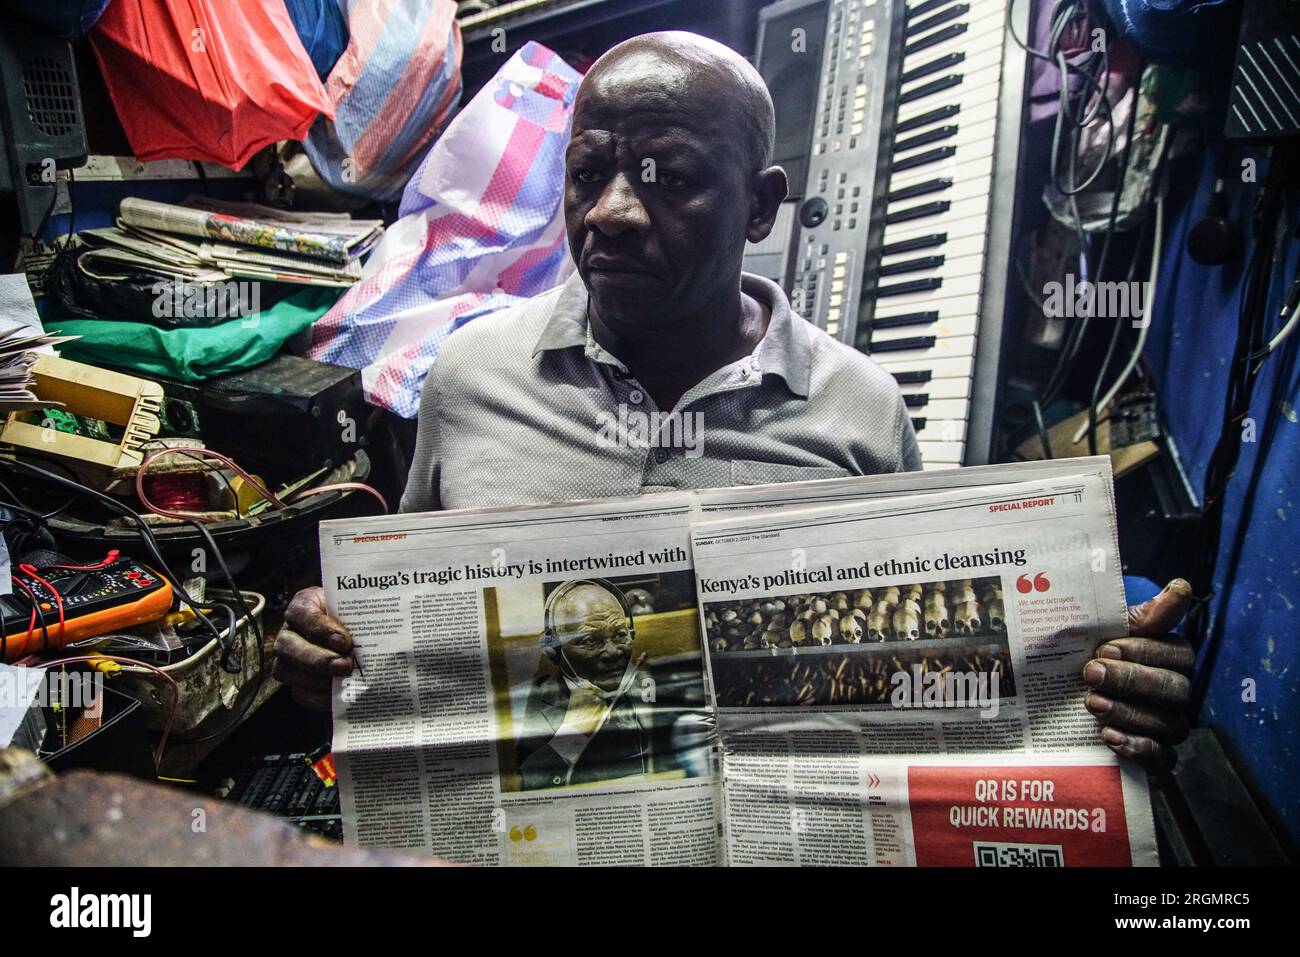 Josephat Mureithi de 54 años, hermano del periodista keniano asesinado, William Munuhe, muestra un viejo periódico keniano que cubría la historia del presunto prófugo del genocidio ruandés Felicien Kabuga en su taller de reparación de electrónica en la ciudad de Nakuru. La familia del difunto periodista keniano William Munuhe, quien fue asesinado el 14 de enero de 2003, mientras ayudaba a la policía y al FBI a localizar a Felicien Kabuga. Se espera que el presunto cerebro del genocidio ruandés enfermo, Felicien Kabuga, de 87 años de edad, sea liberado tras el Mecanismo Residual Internacional de Crim de las Naciones Unidas Foto de stock